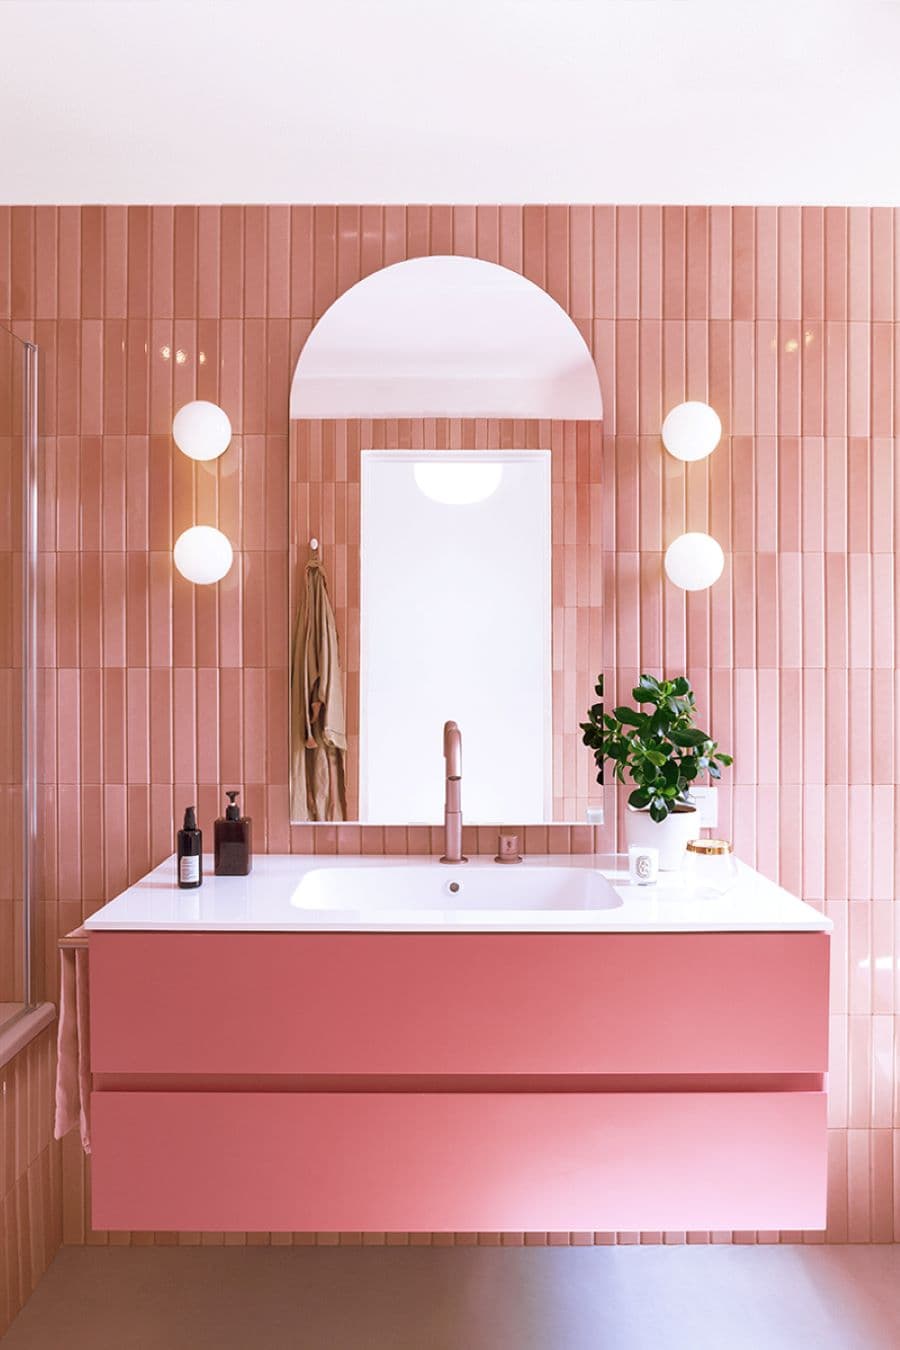 Baño con azulejos alargados color rosado. Vanitorio moderno, de color rosado y base blanca. Grifería de cobre rosa. Espejo en forma de arco. A ambos costados hay dos focos de muro redondos, uno sobre otro.